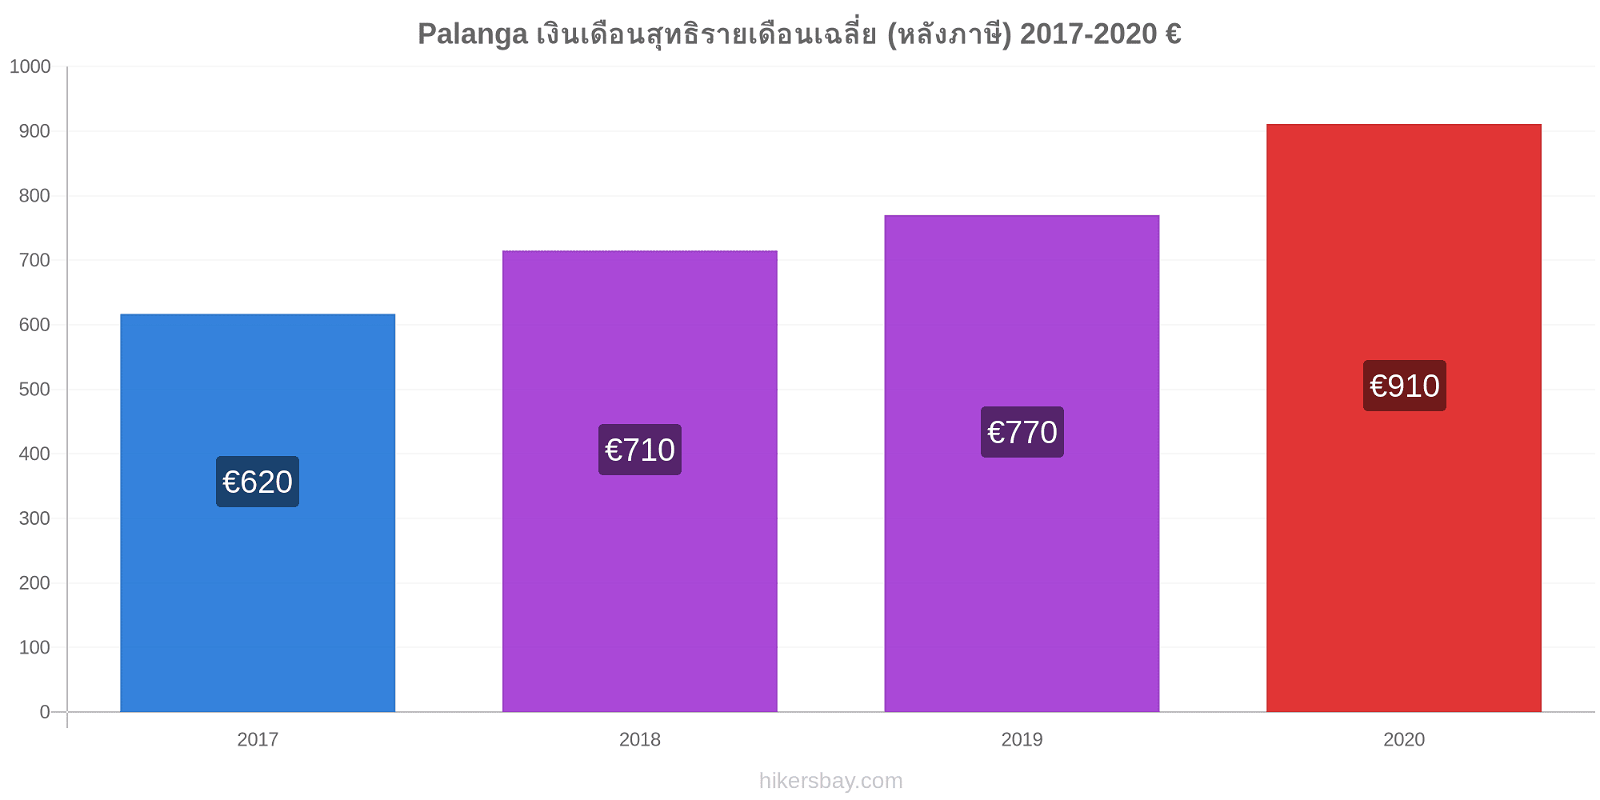 Palanga การเปลี่ยนแปลงราคา เงินเดือนสุทธิรายเดือนเฉลี่ย (หลังภาษี) hikersbay.com